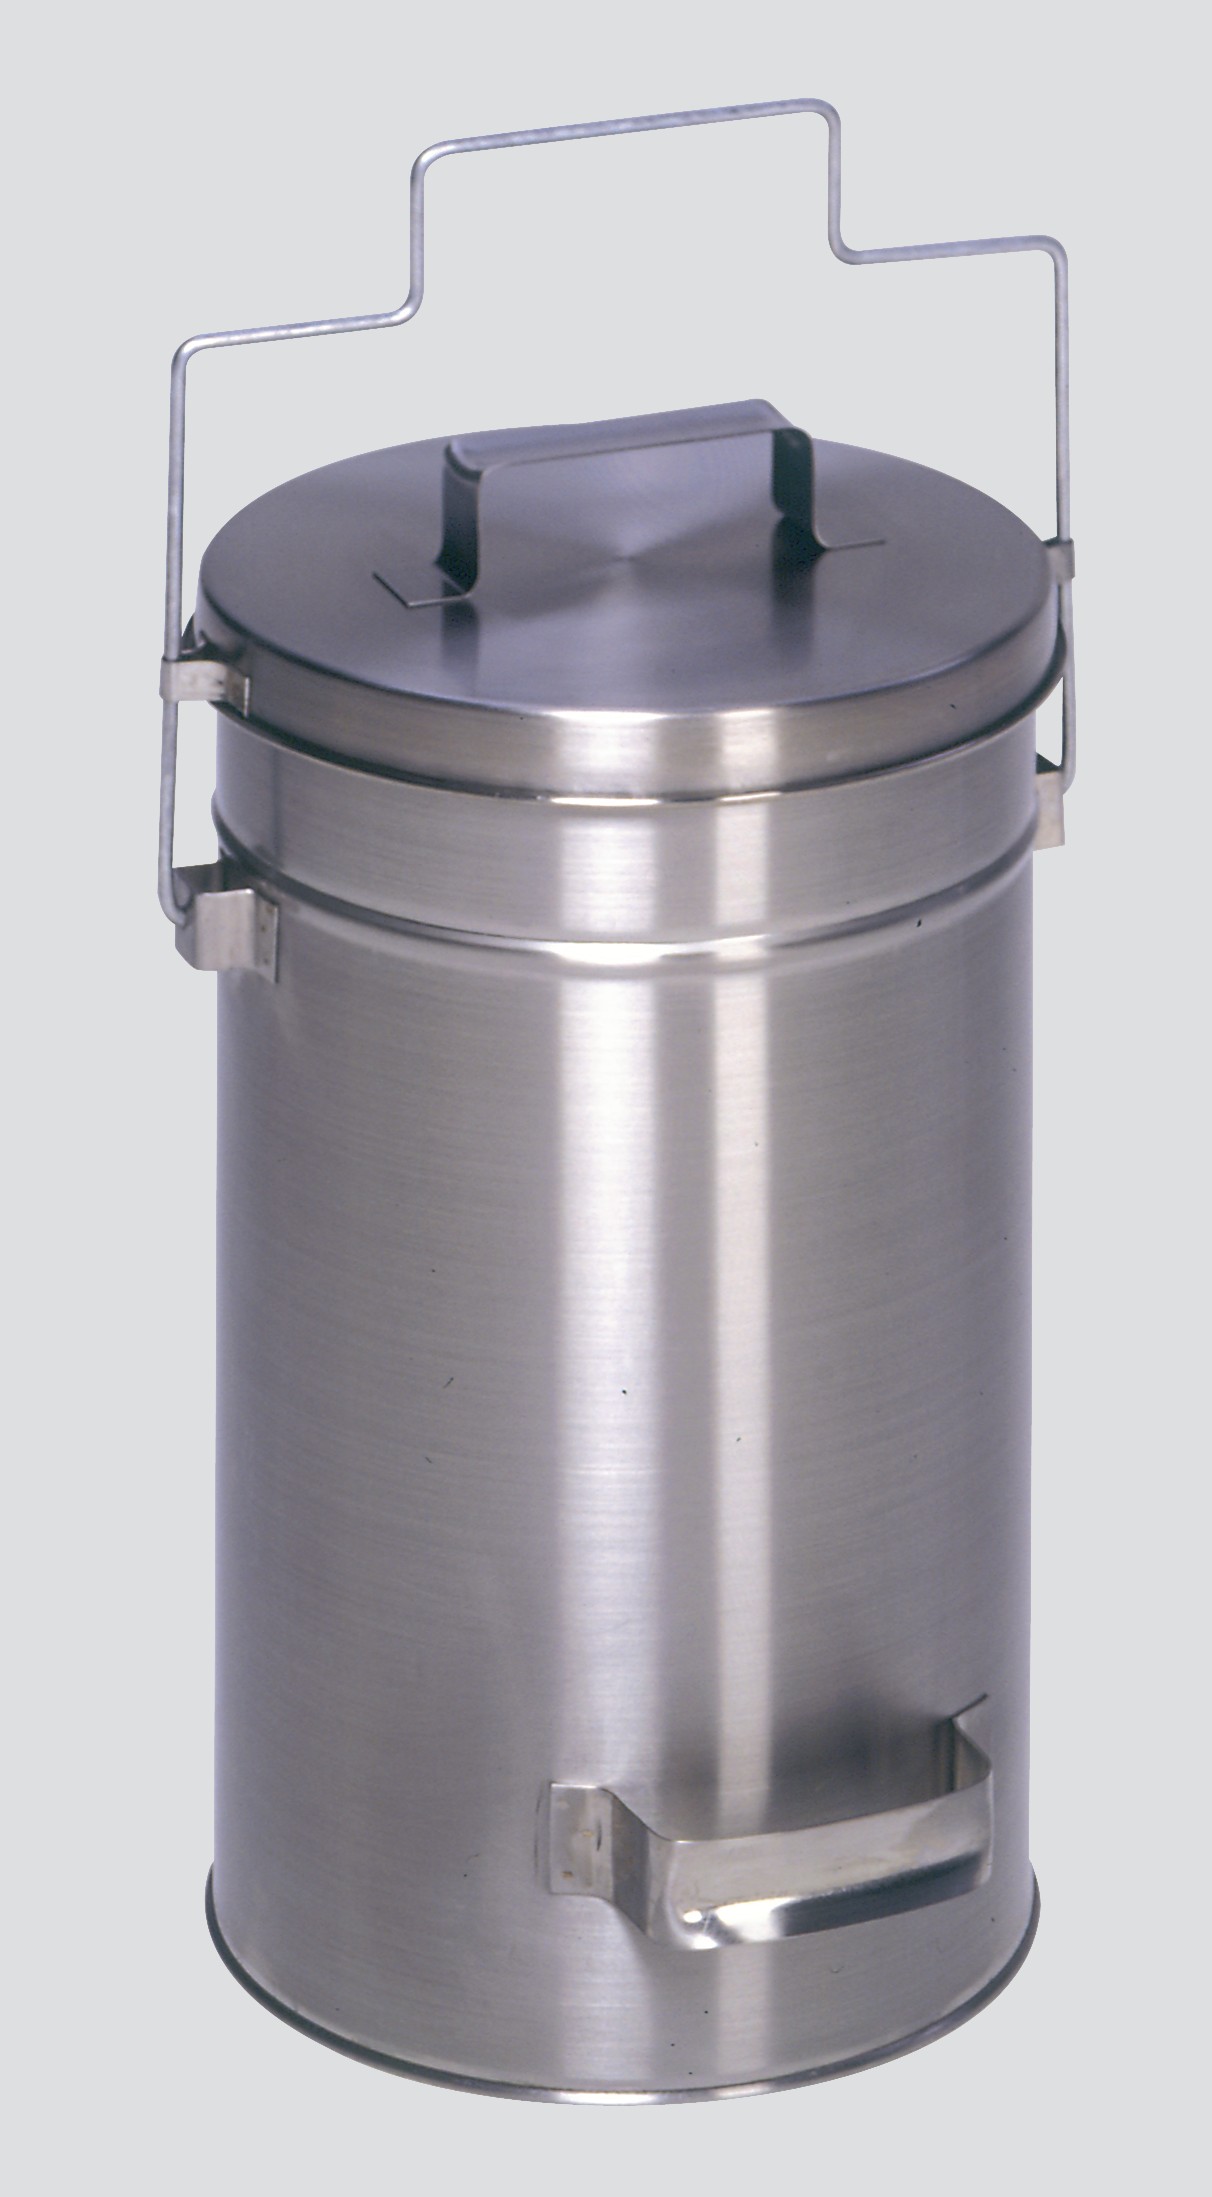 Robuster Sicherheitsbehälter mit Deckel & Tragebügel | HxBxT 38x27x27cm | Edelstahl | Grau